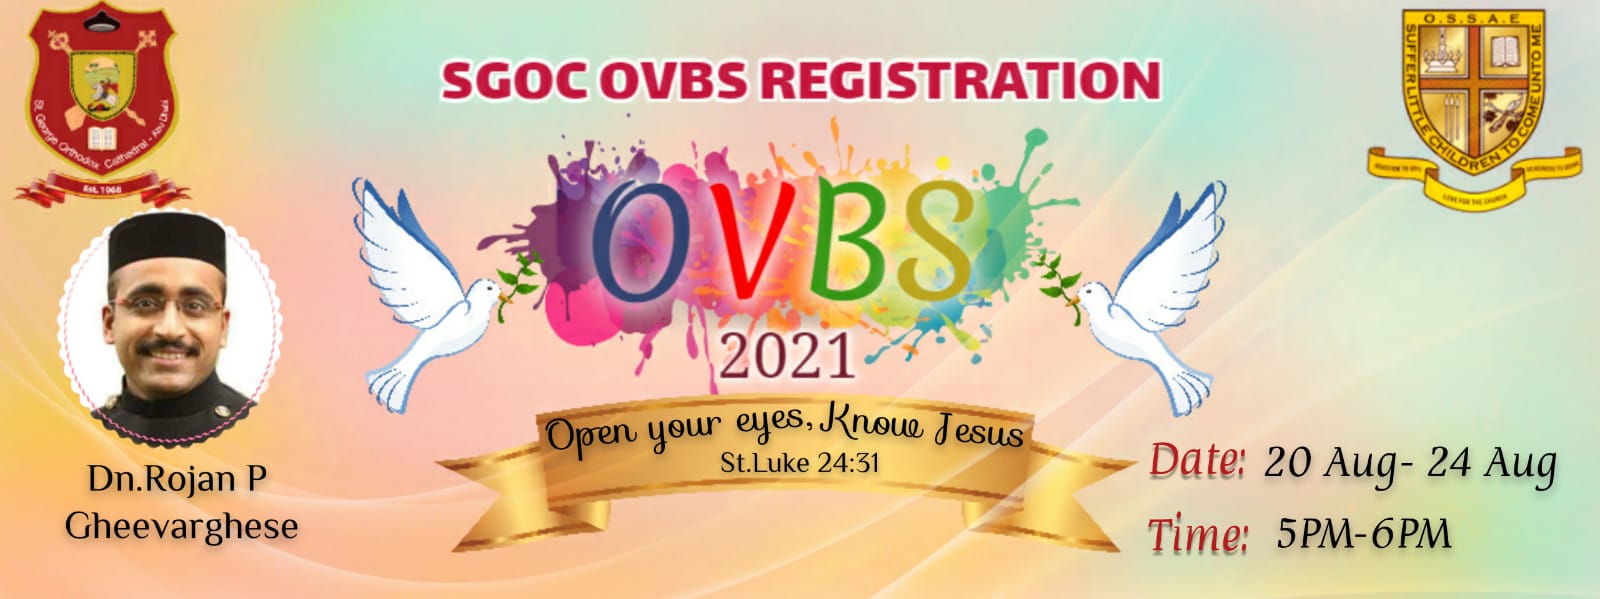 OVBS 2021